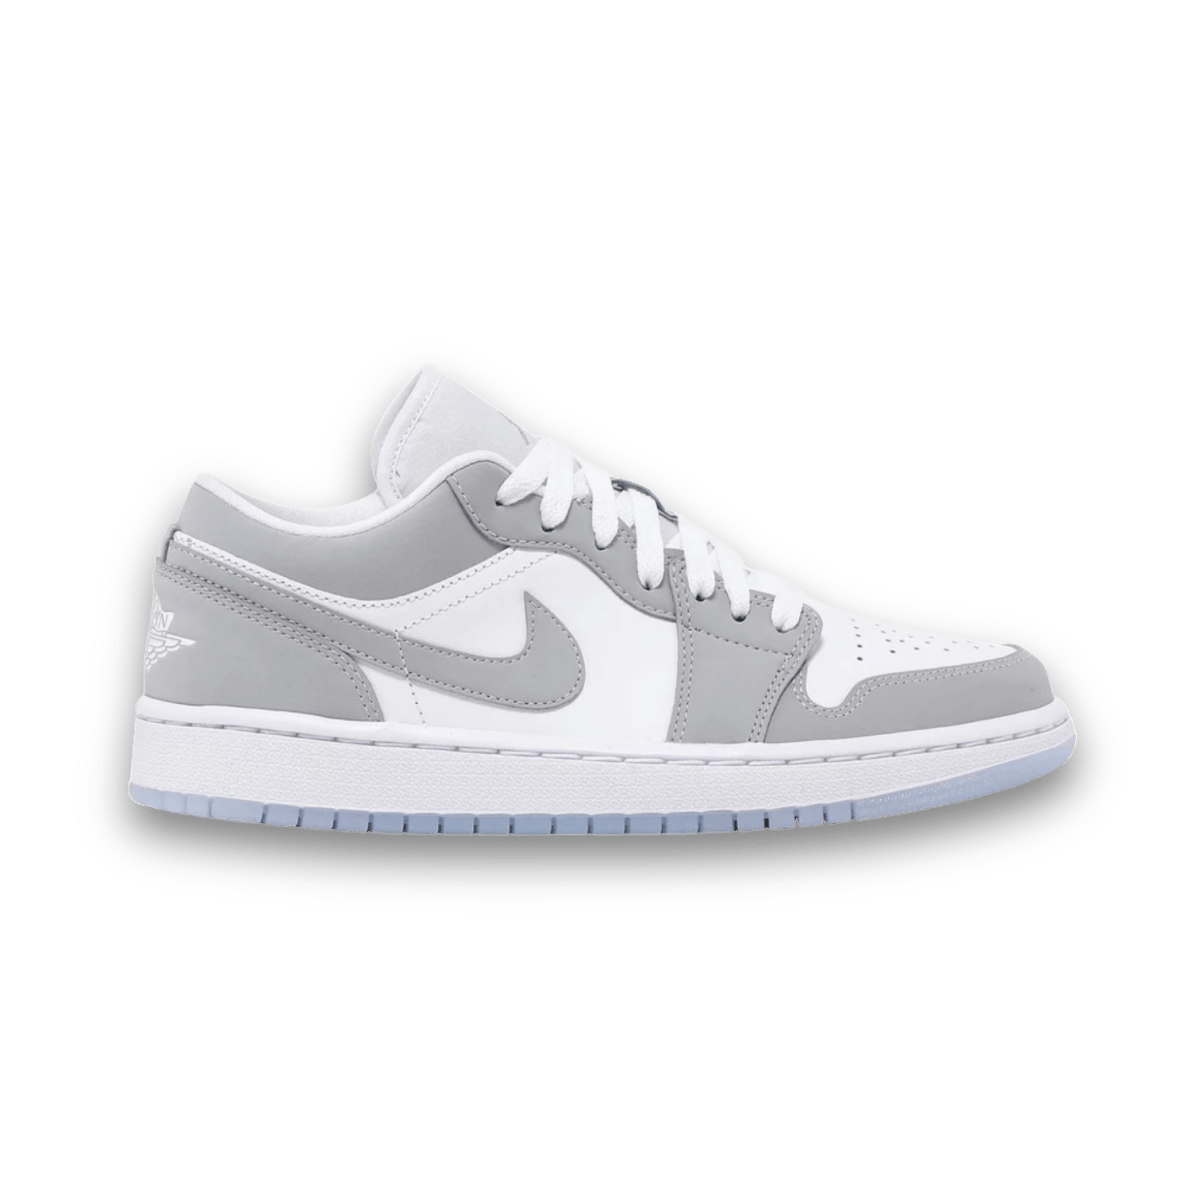 Air Jordan 1 Low 'White Wolf Grey' - Women - Low Sneaker - Jordan - Jawns on Fire - sneakers